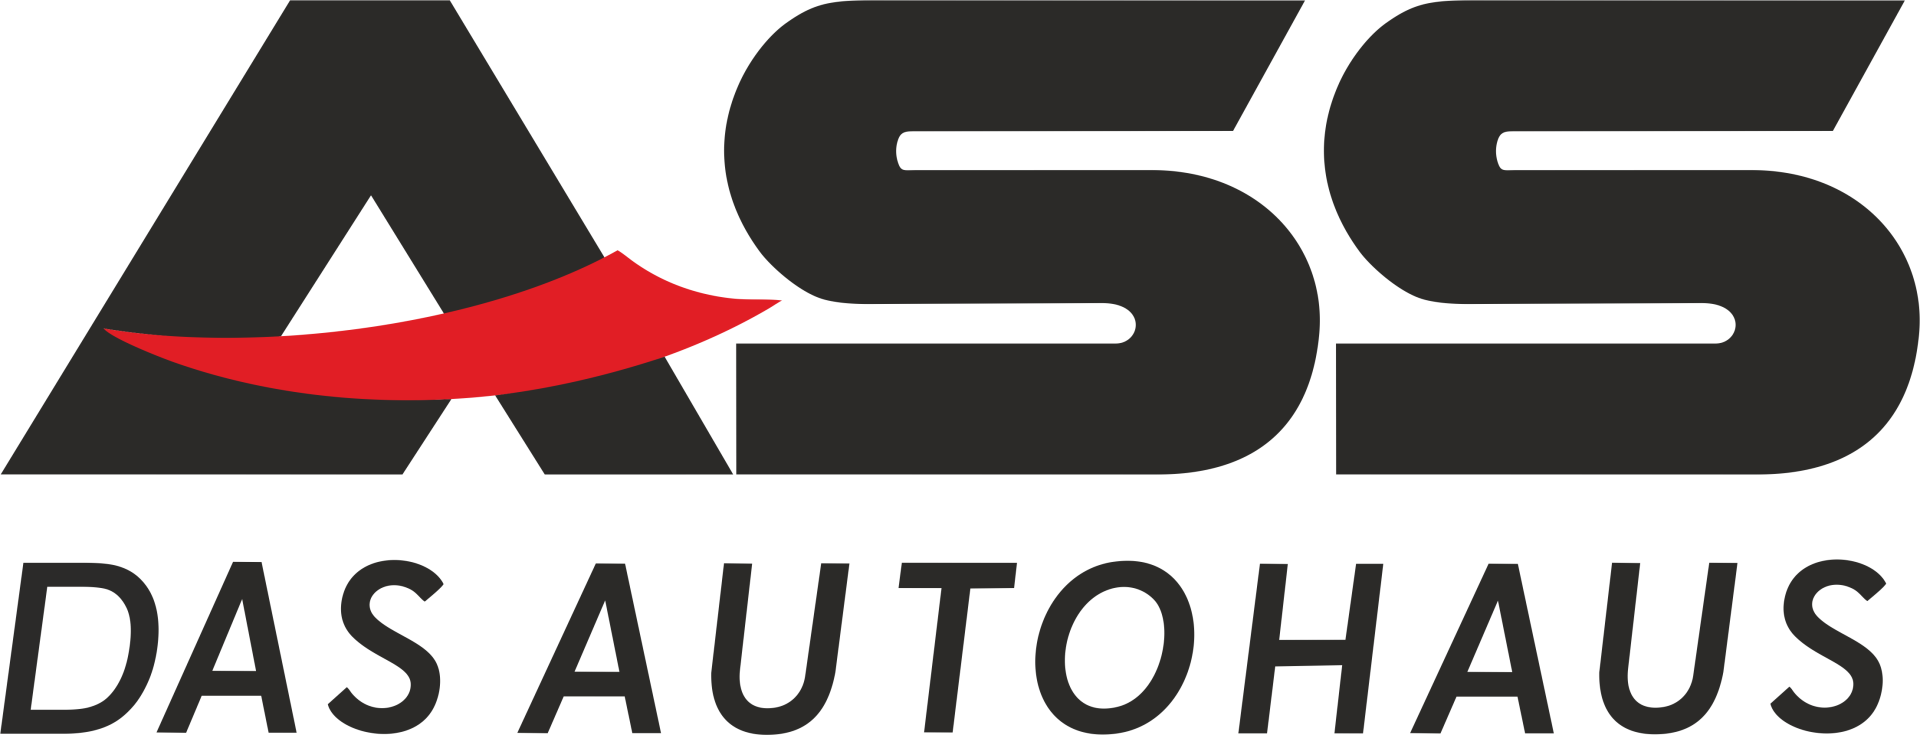 Logo ASS